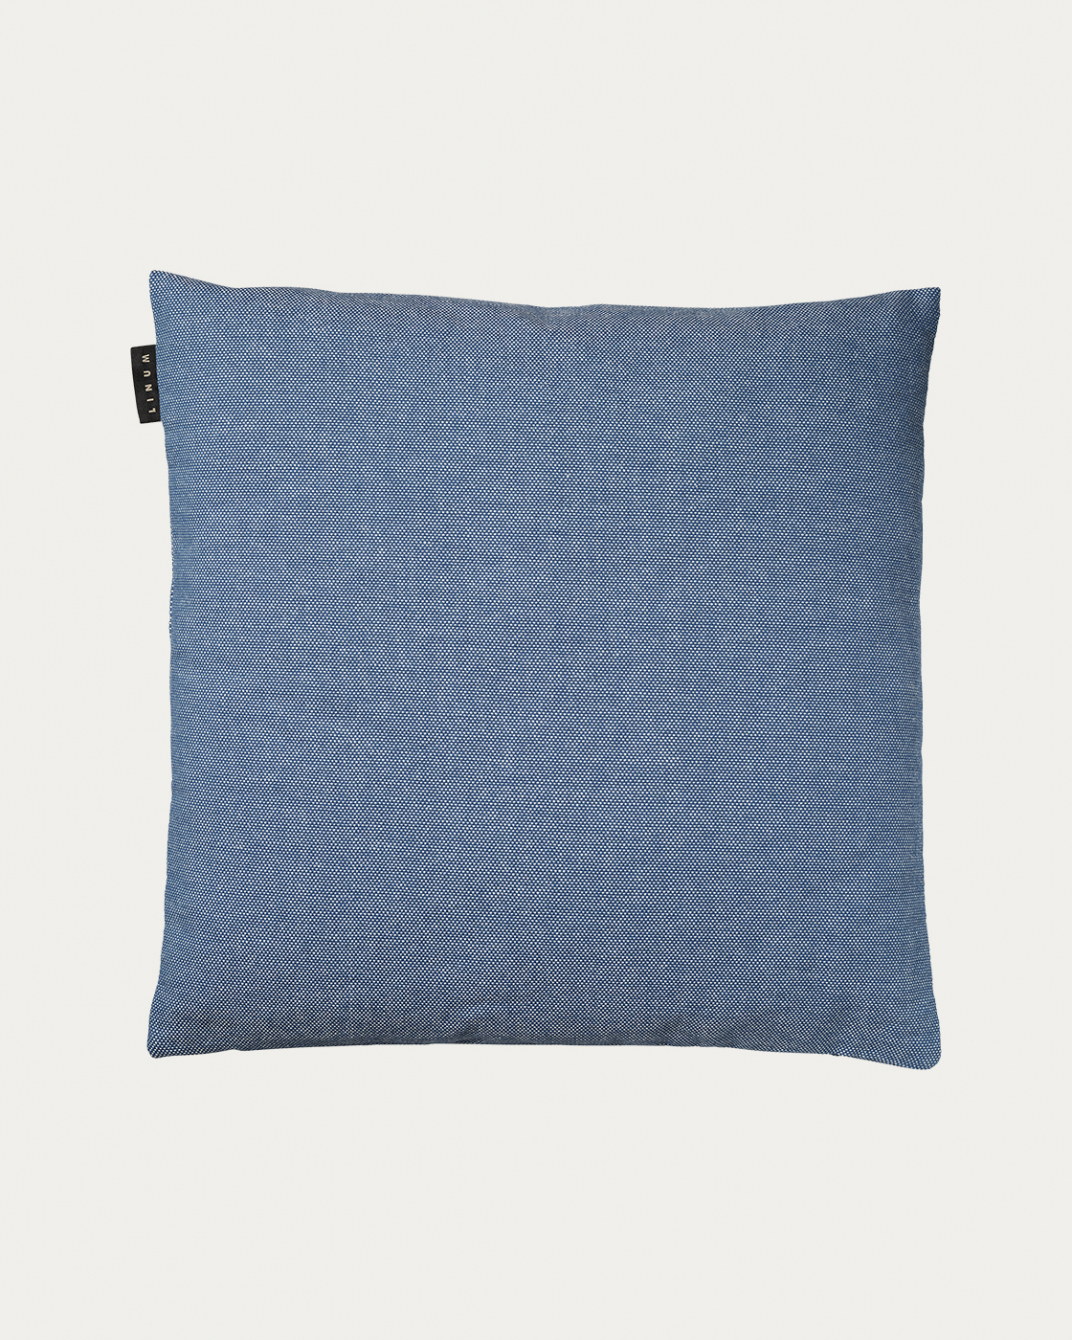 PEPPER Cushion cover 50x50 cm Deep sea blue